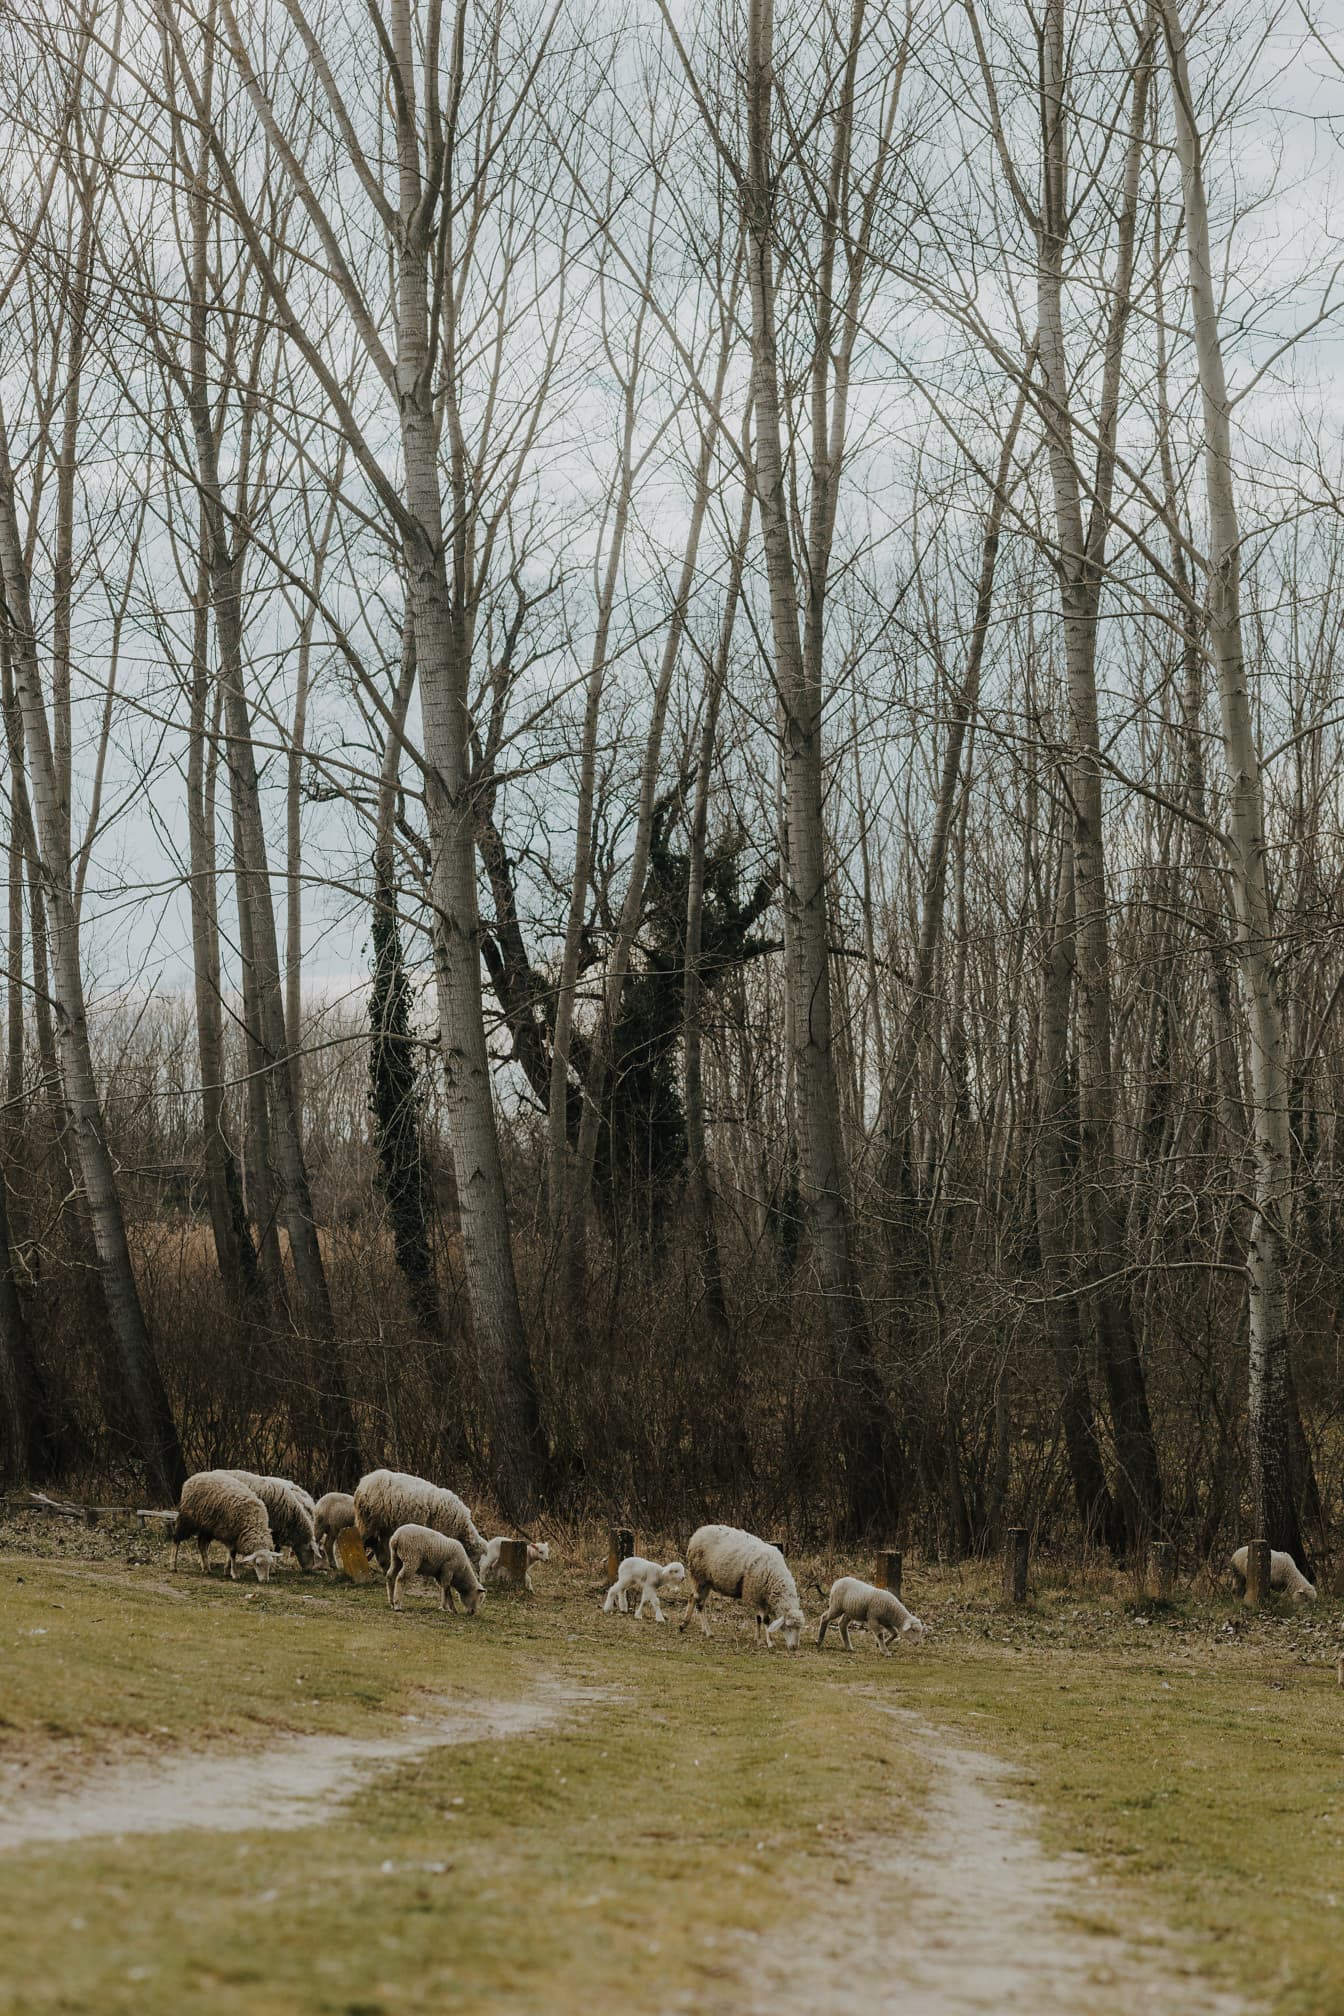 Owce domowe z jagniętami wypasanymi w stadzie